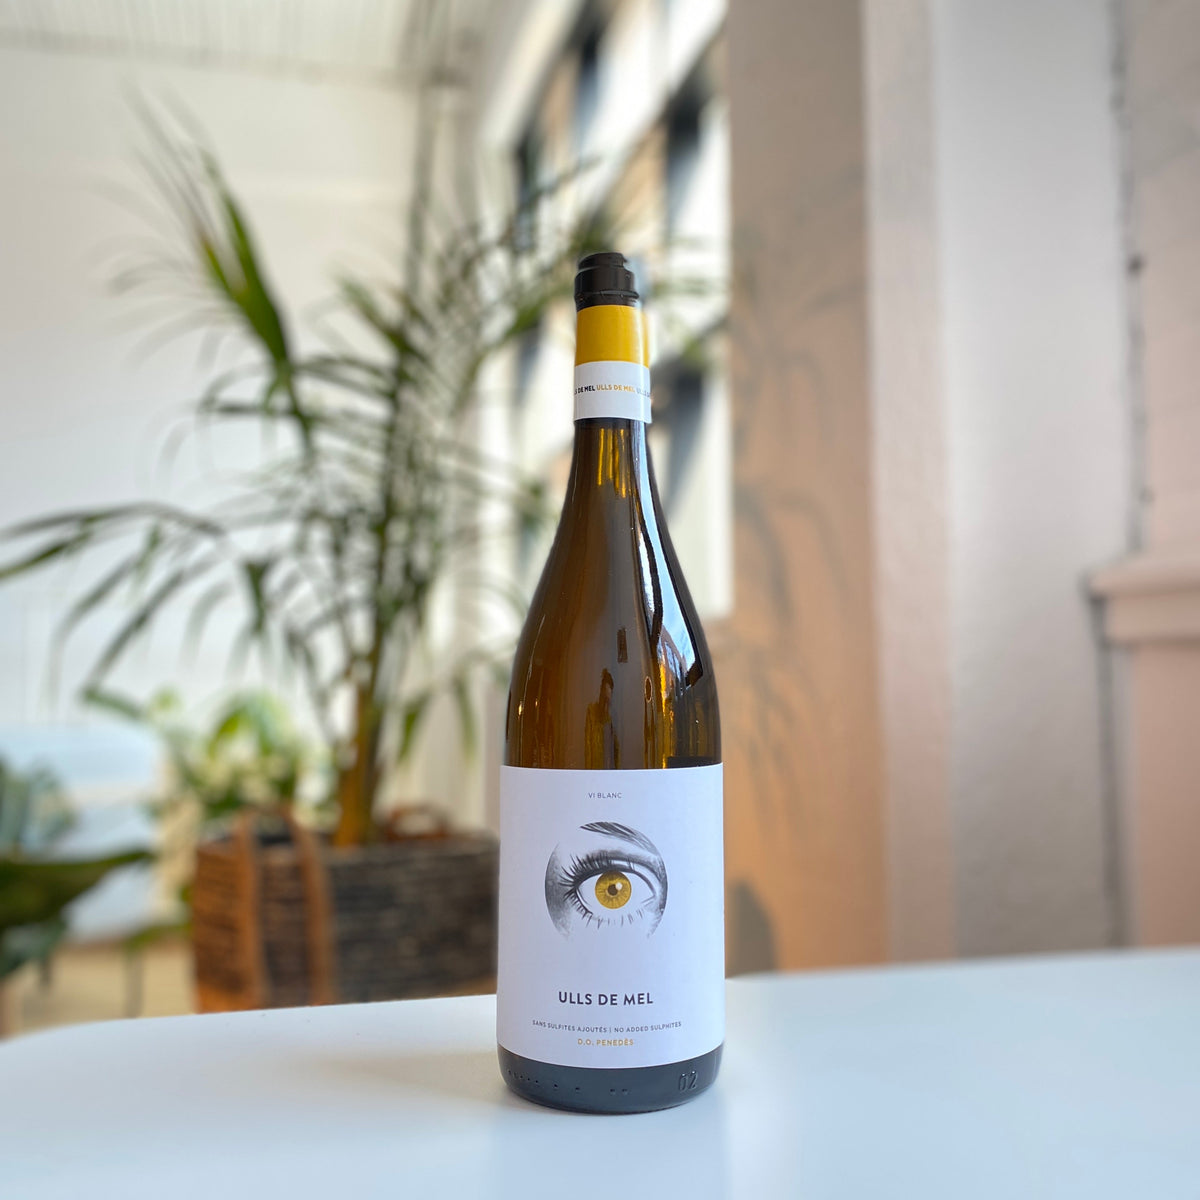 Bouteille de vin nature, vin blanc de la Catalogne du Domaine Josep Masachs : Ulls de mel.